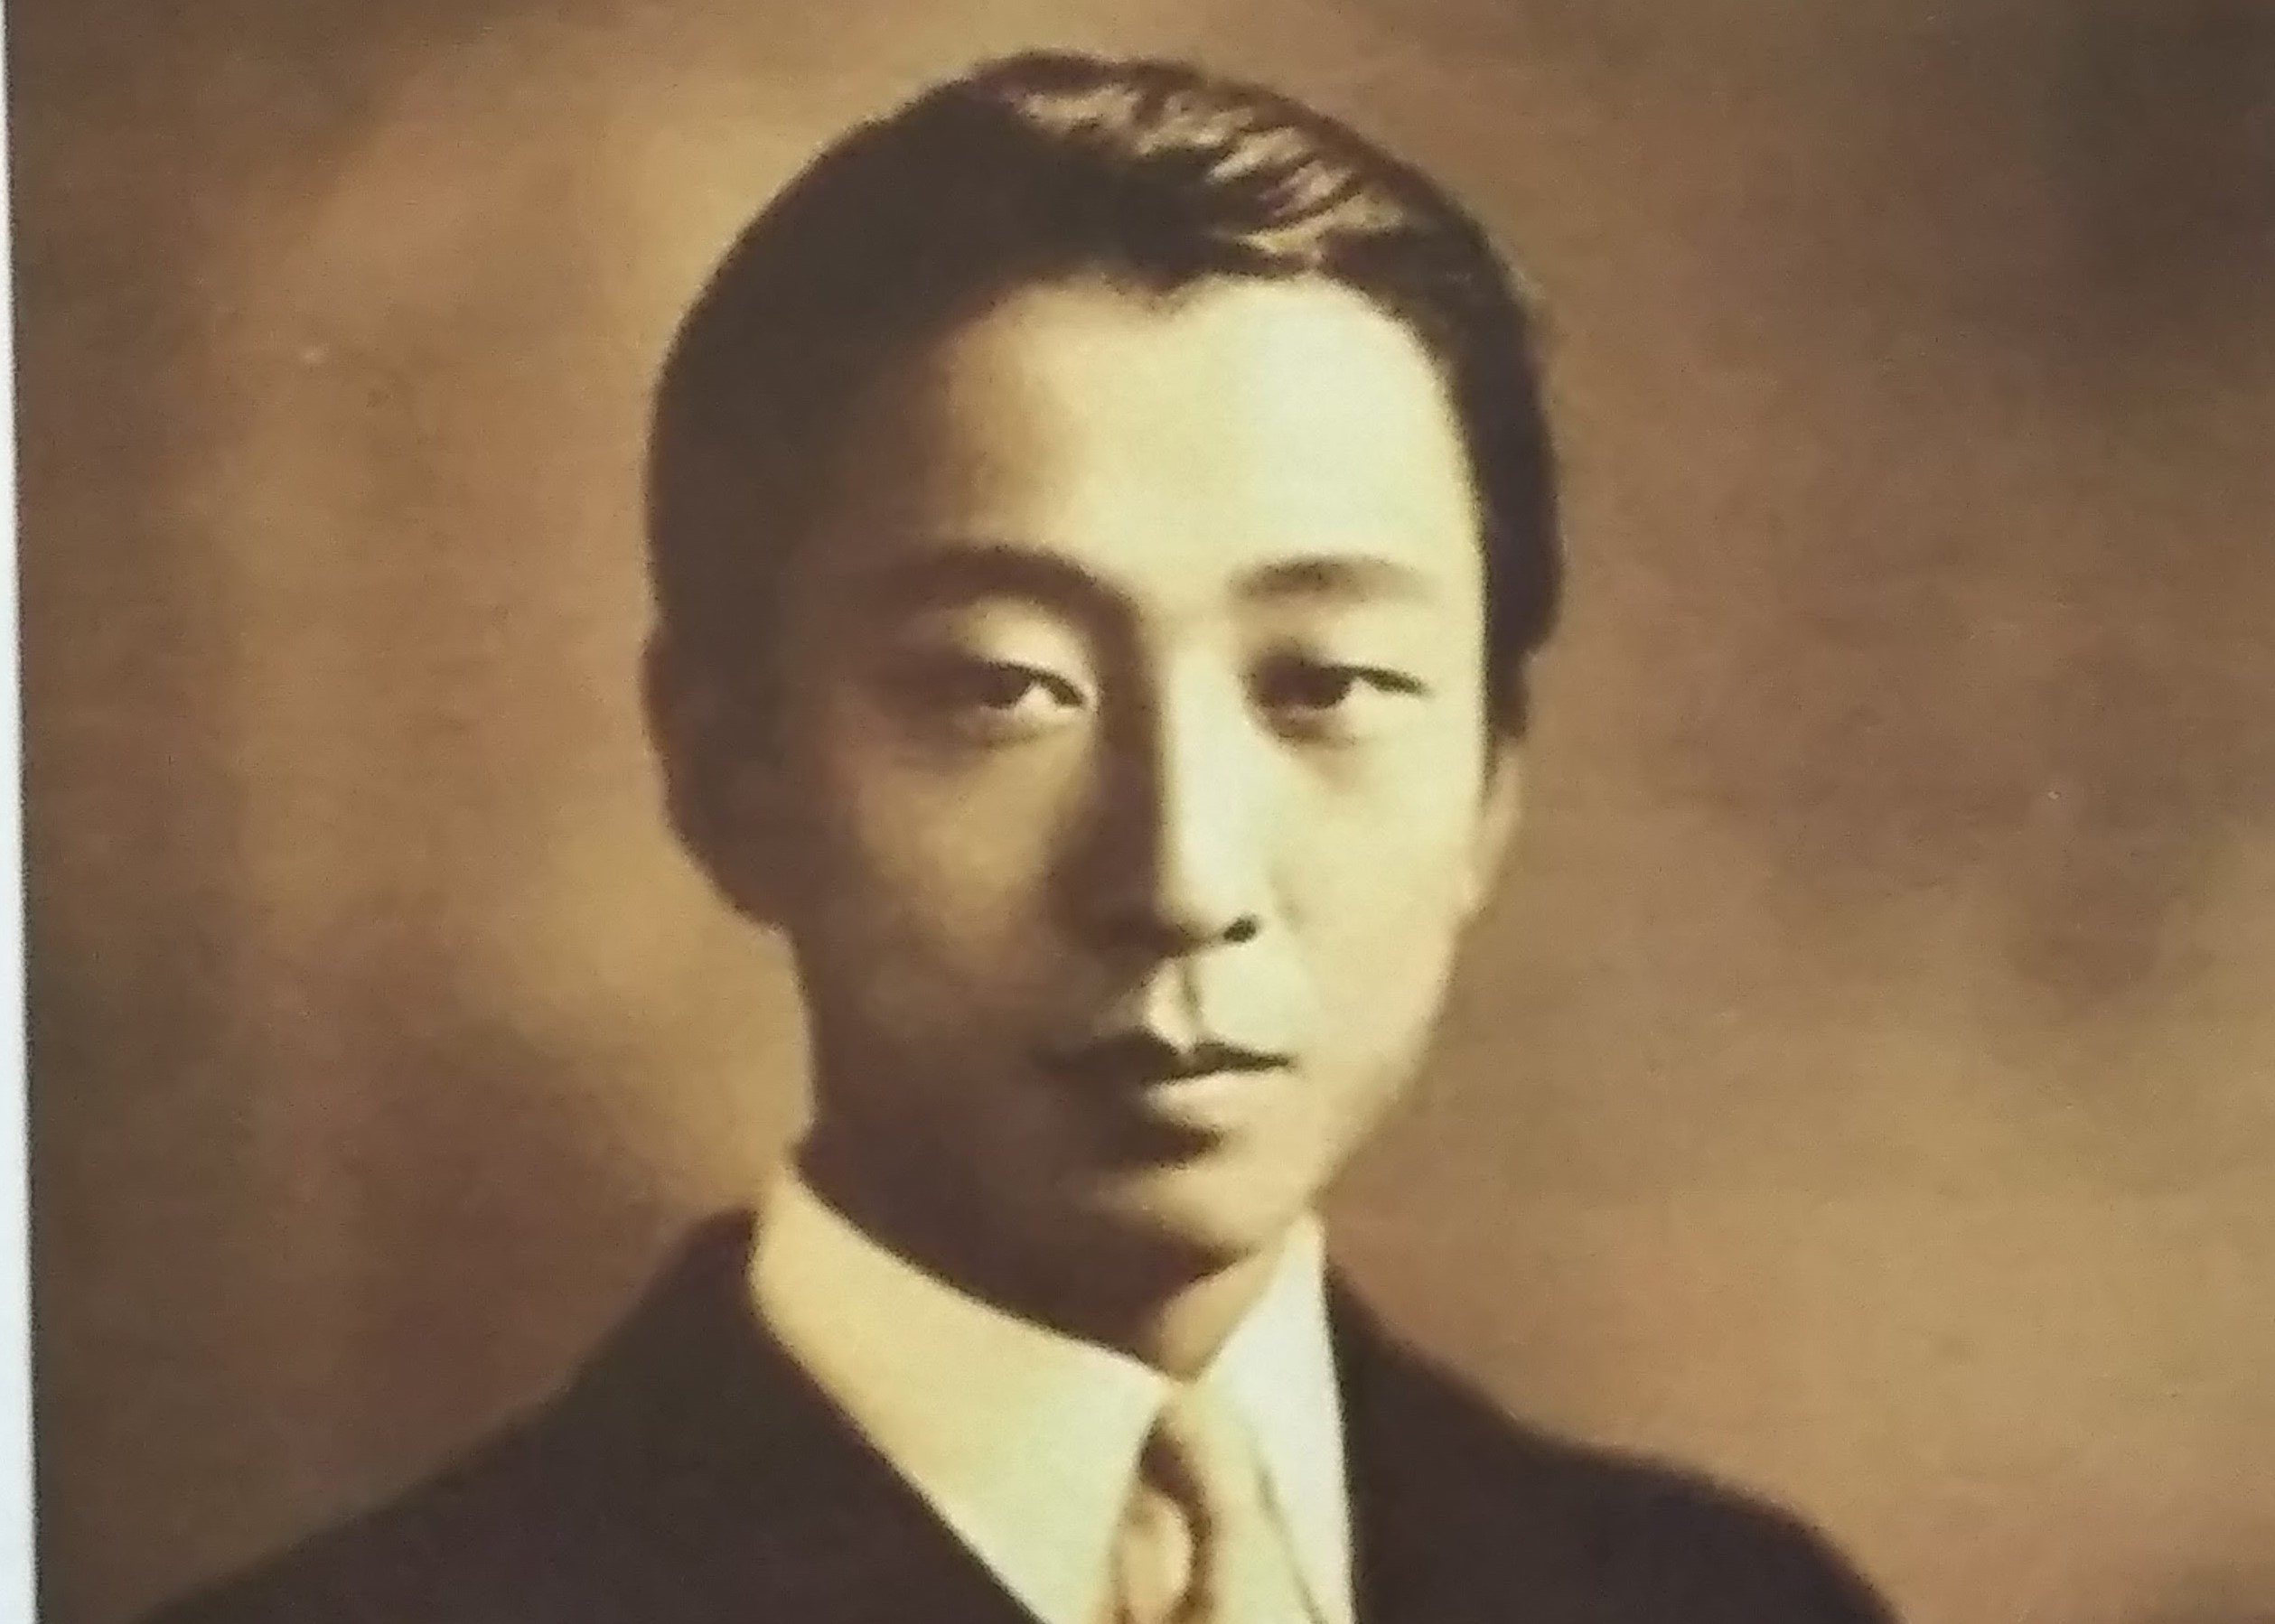 神戸が生んだ偉大な作曲家・大澤壽人の世界を後世に「神戸からボストン